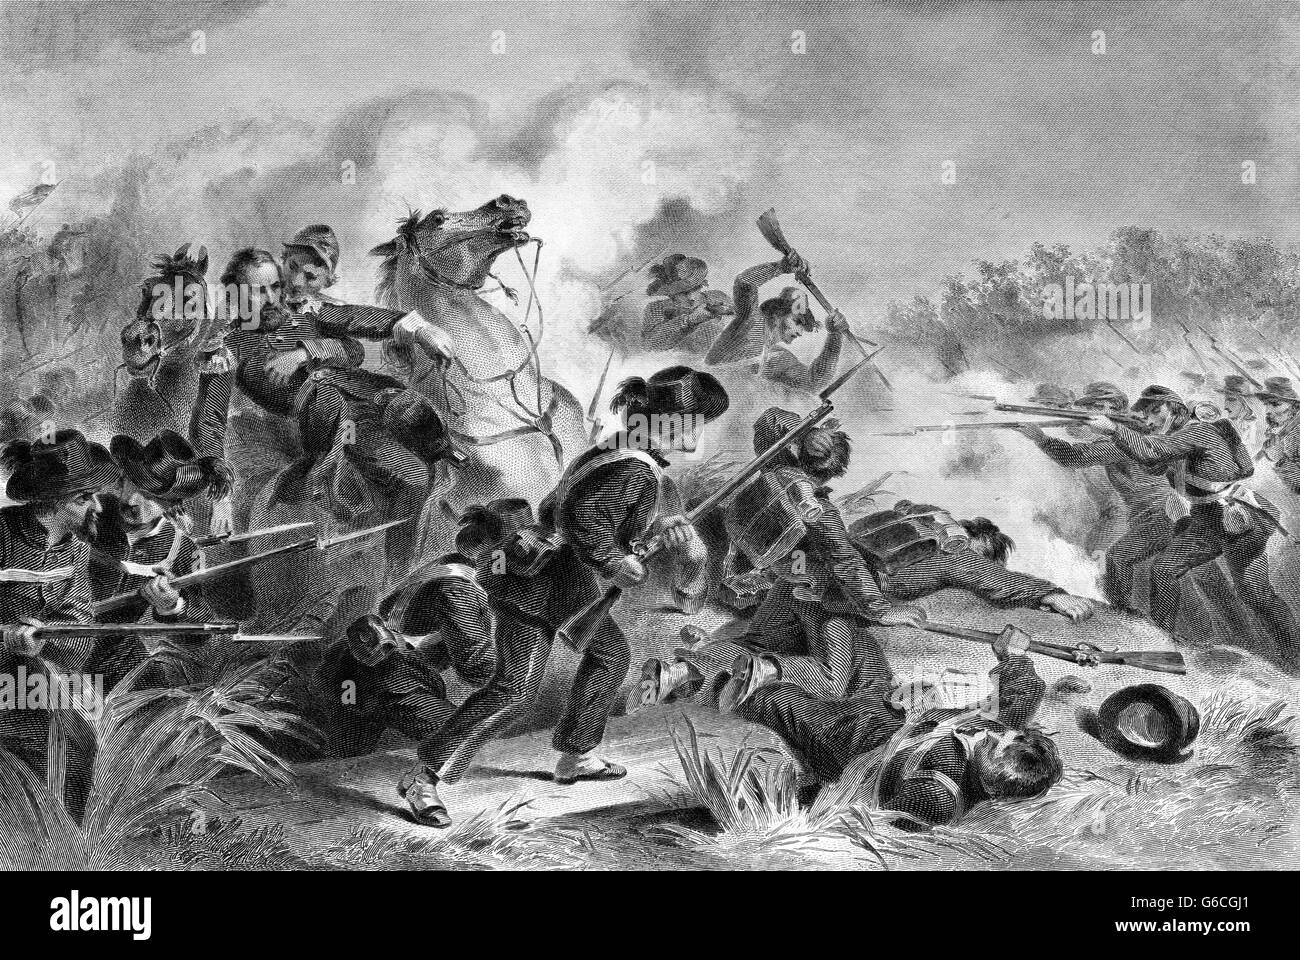 1860ER JAHRE AUGUST 1861 SCHLACHT VON WILSON'S CREEK UND DER TOD VON GENERAL LYON IN DER NÄHE VON SPRINGFIELD IN MISSOURI Stockfoto